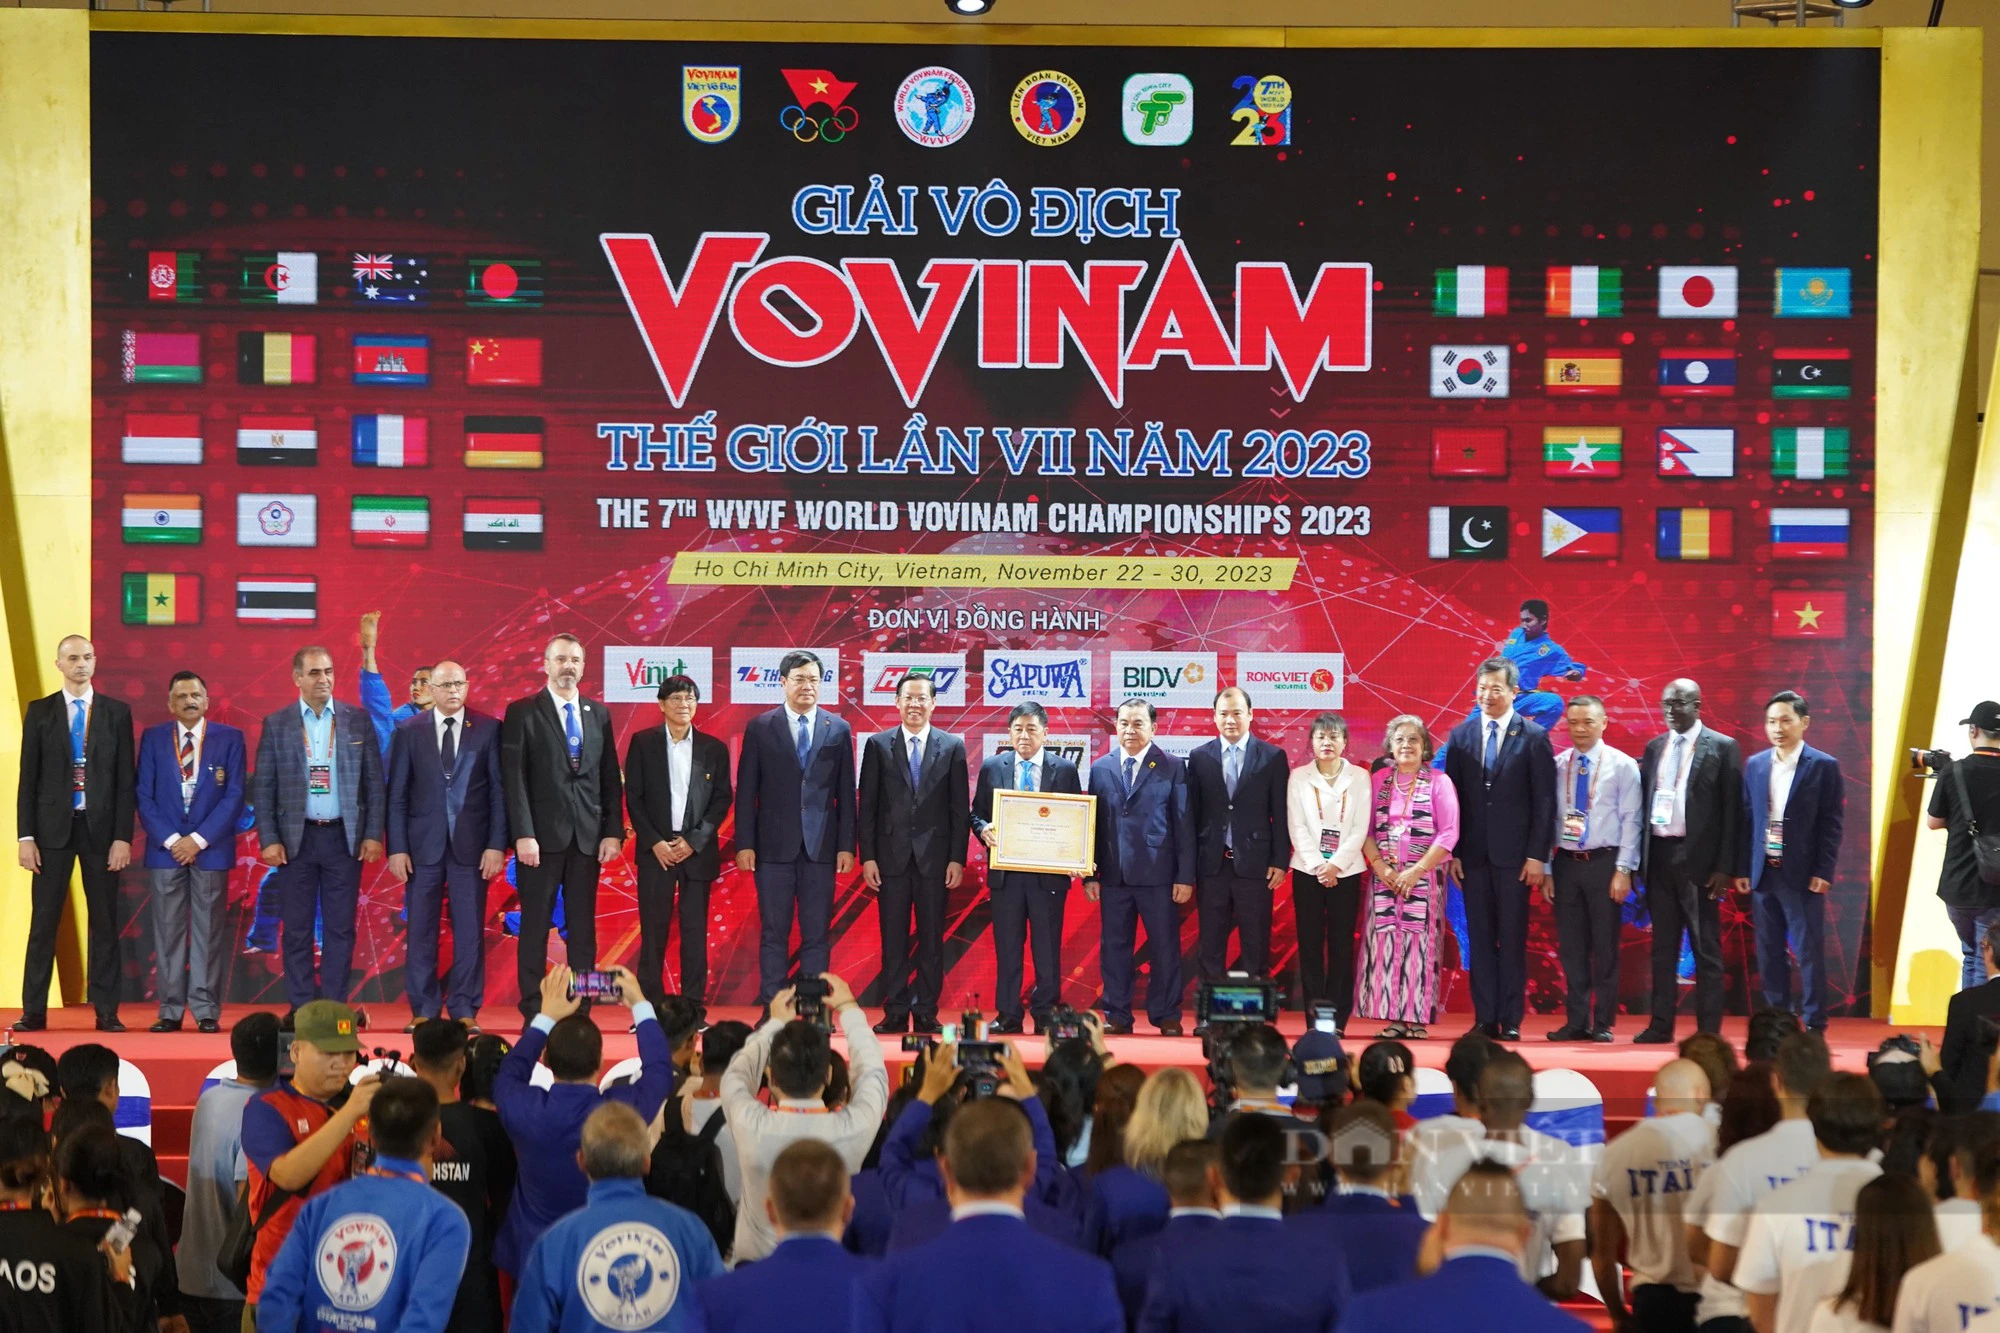 Chủ tịch UBND TP.HCM, Phan Văn Mãi: &quot;Vovinam là sứ giả văn hóa kết nối cộng đồng quốc tế trên tinh thần thượng võ&quot; - Ảnh 5.